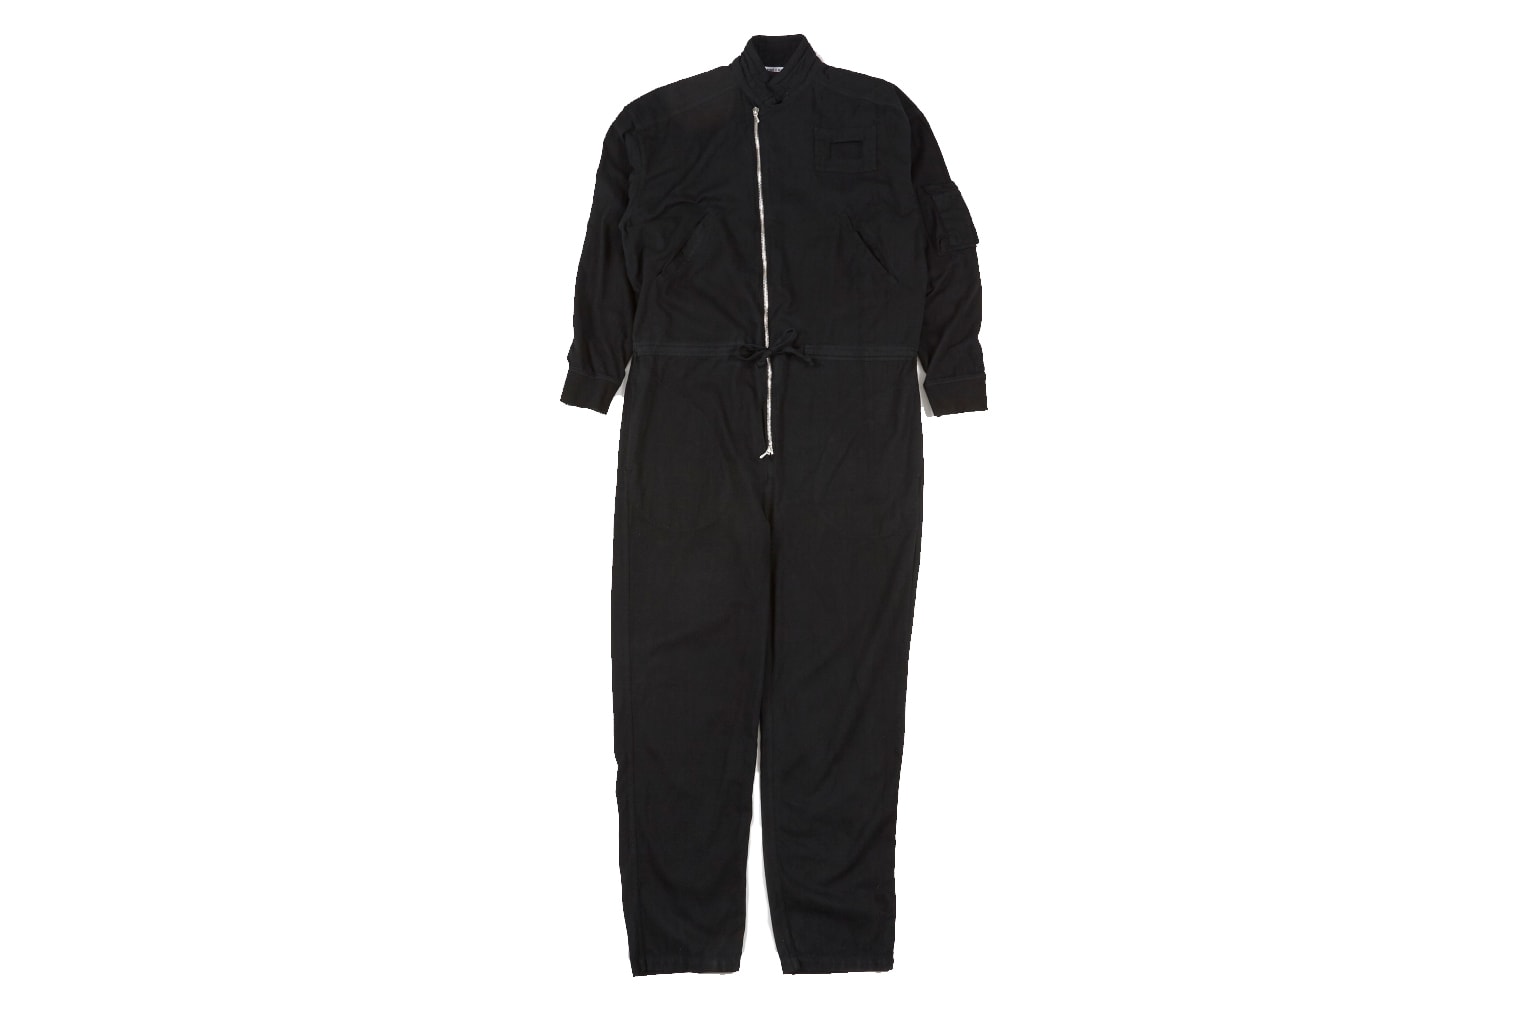 Katharine Hamnett x YMC Boiler Suit, black, cotton, onesie, one-piece, jumpsuit, drawstring, pockets